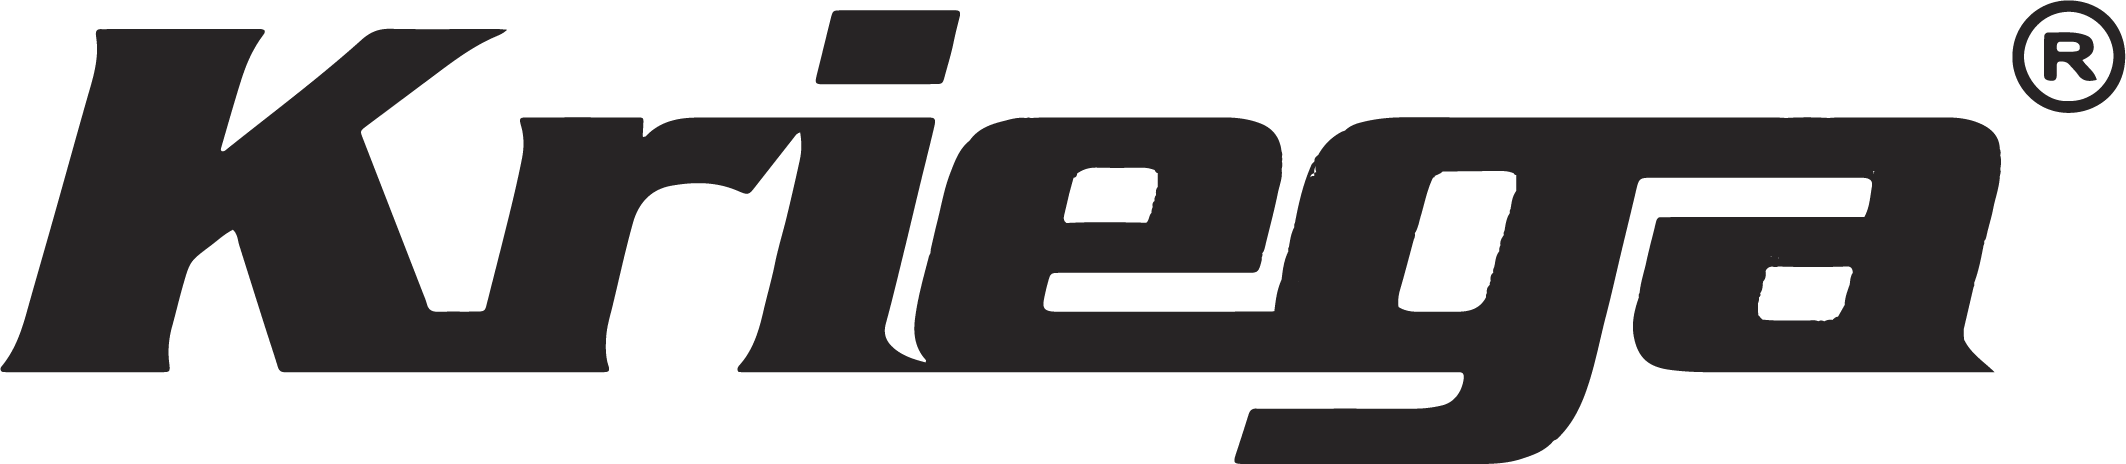 Kriega logo.png